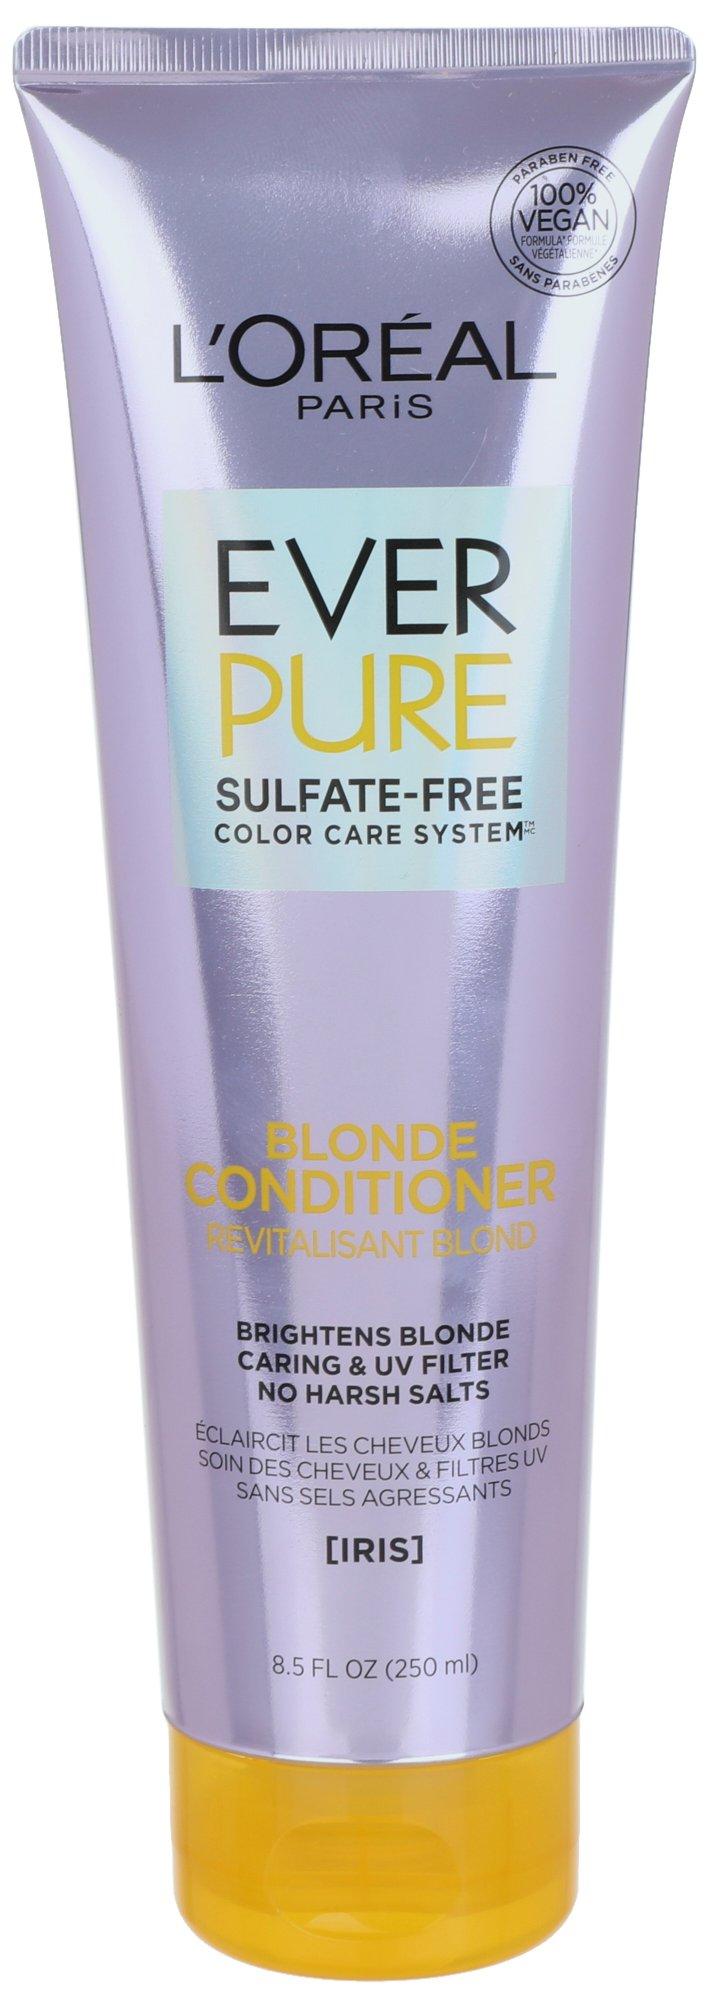 L'Oreal Ever Pure Blonde Conditioner 8.5 Fl. Oz.